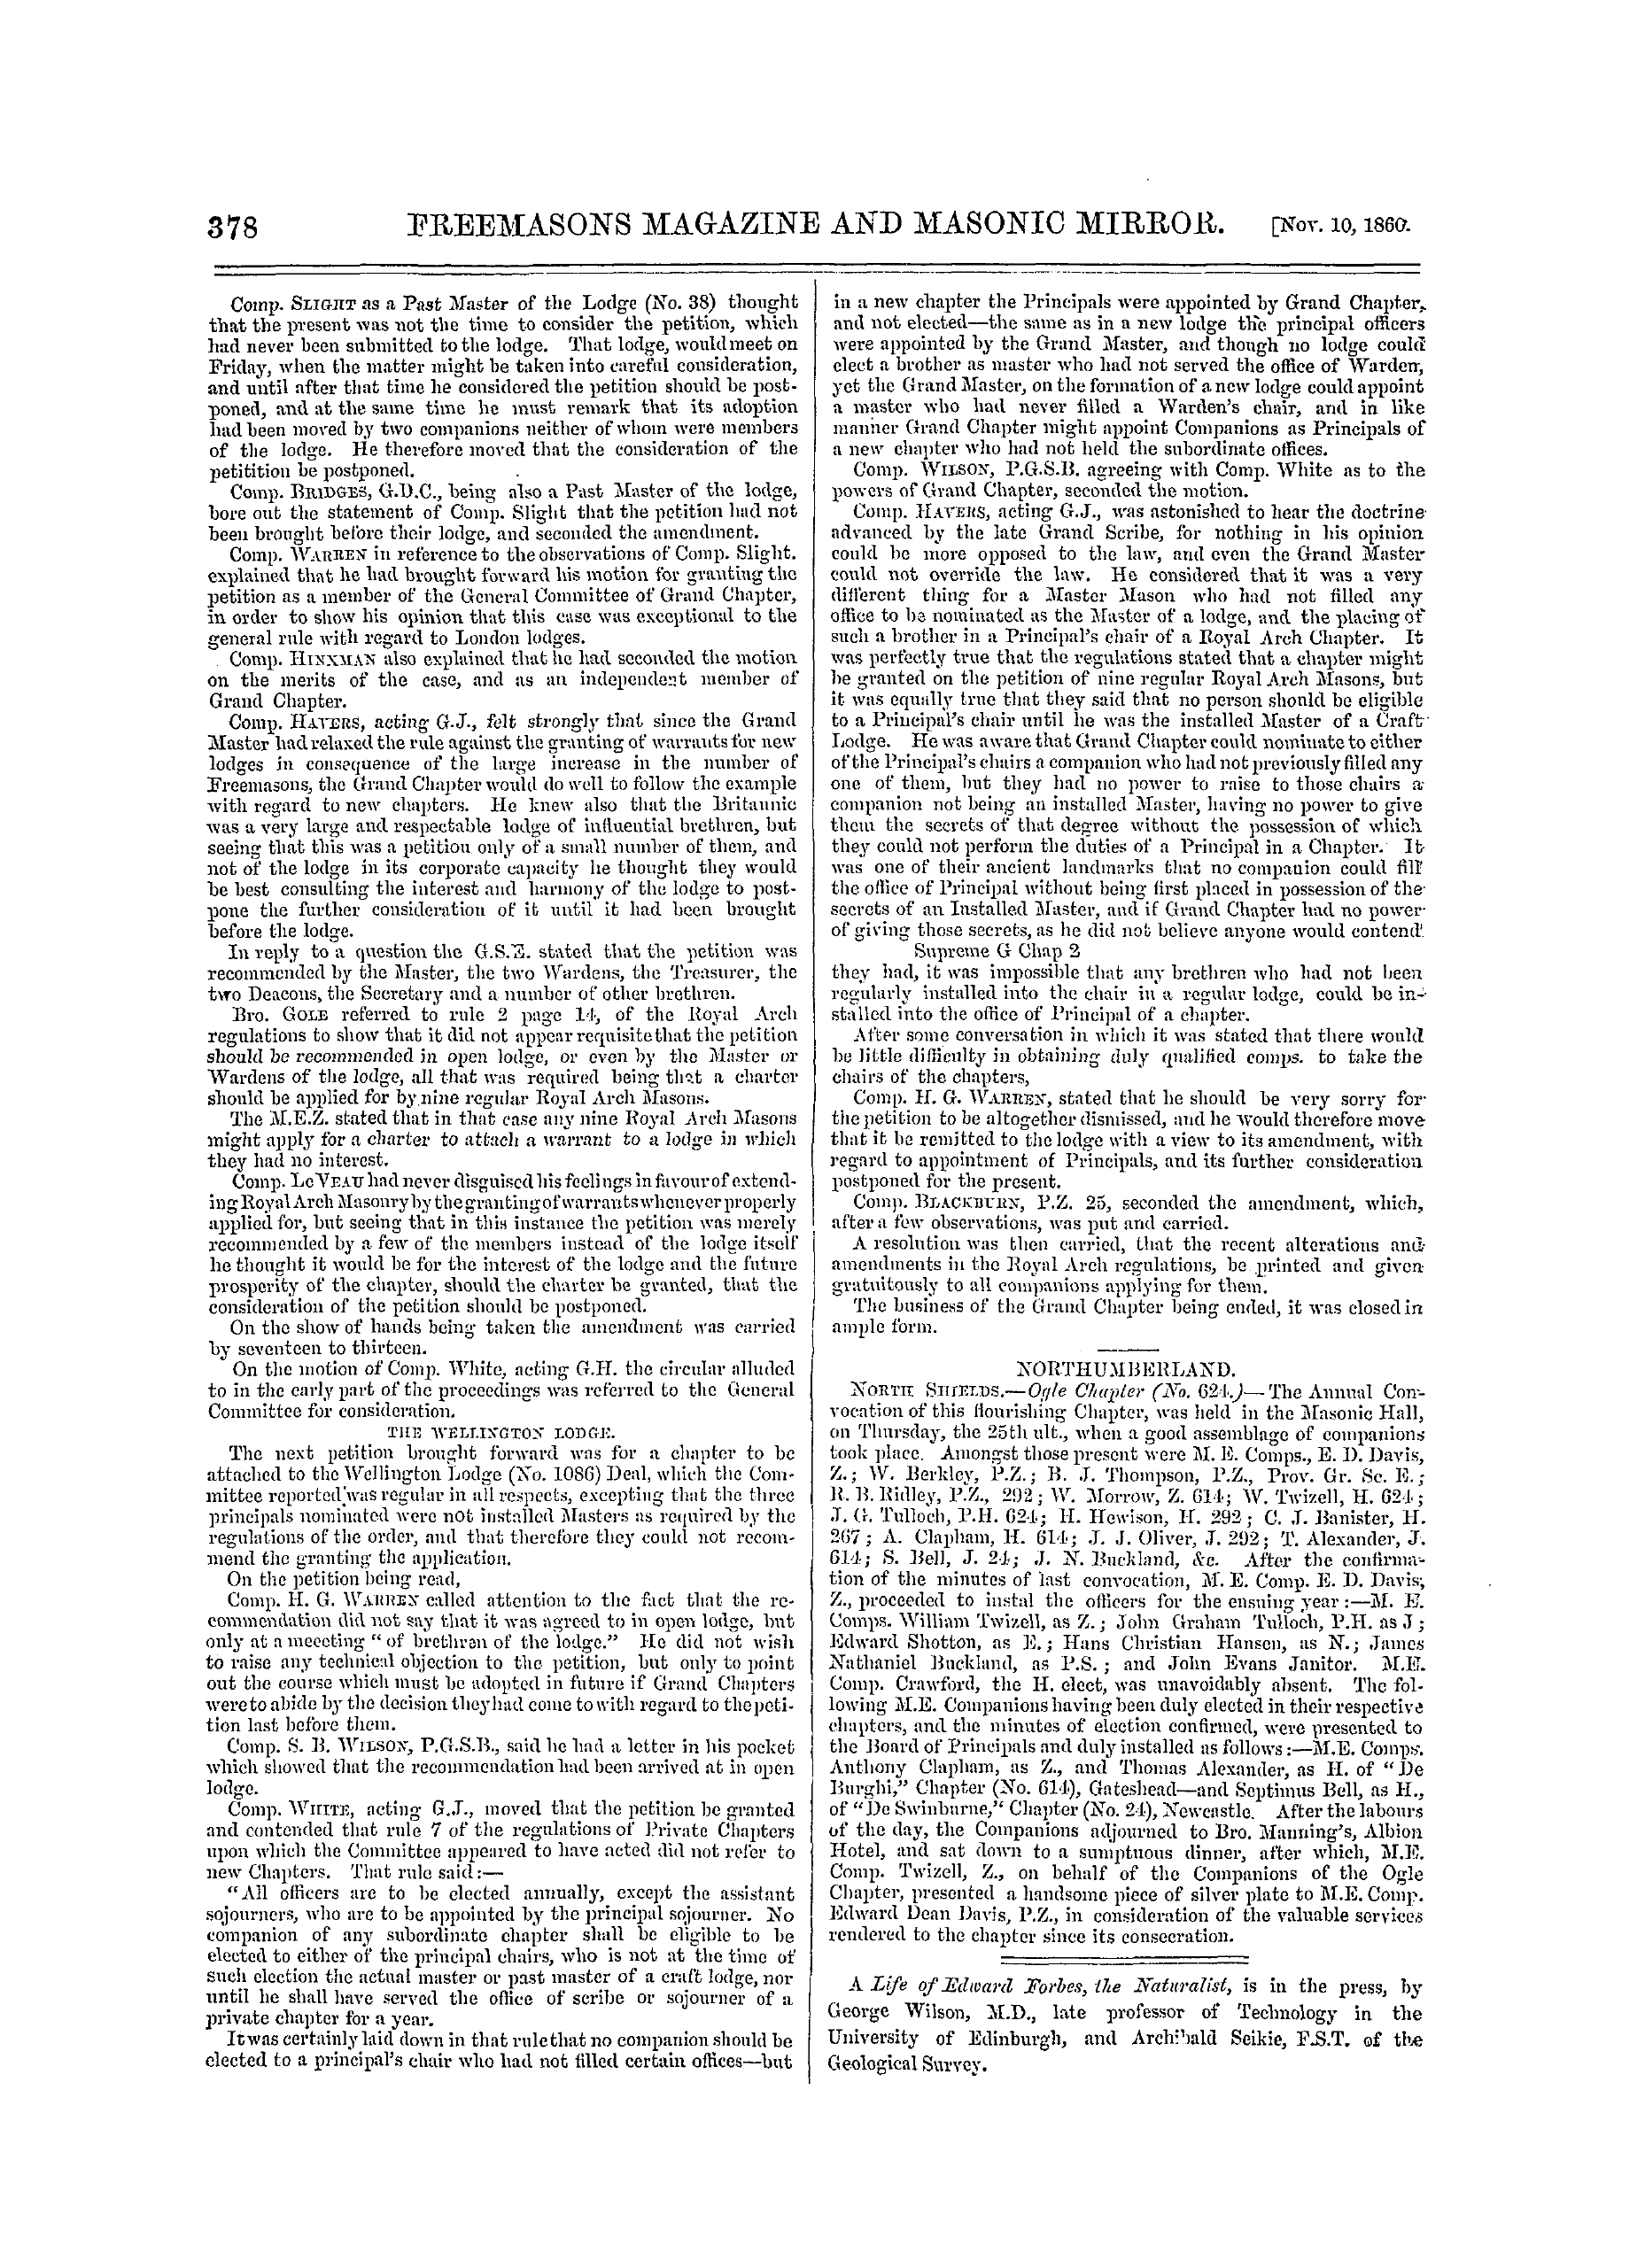 The Freemasons' Monthly Magazine: 1860-11-10: 18